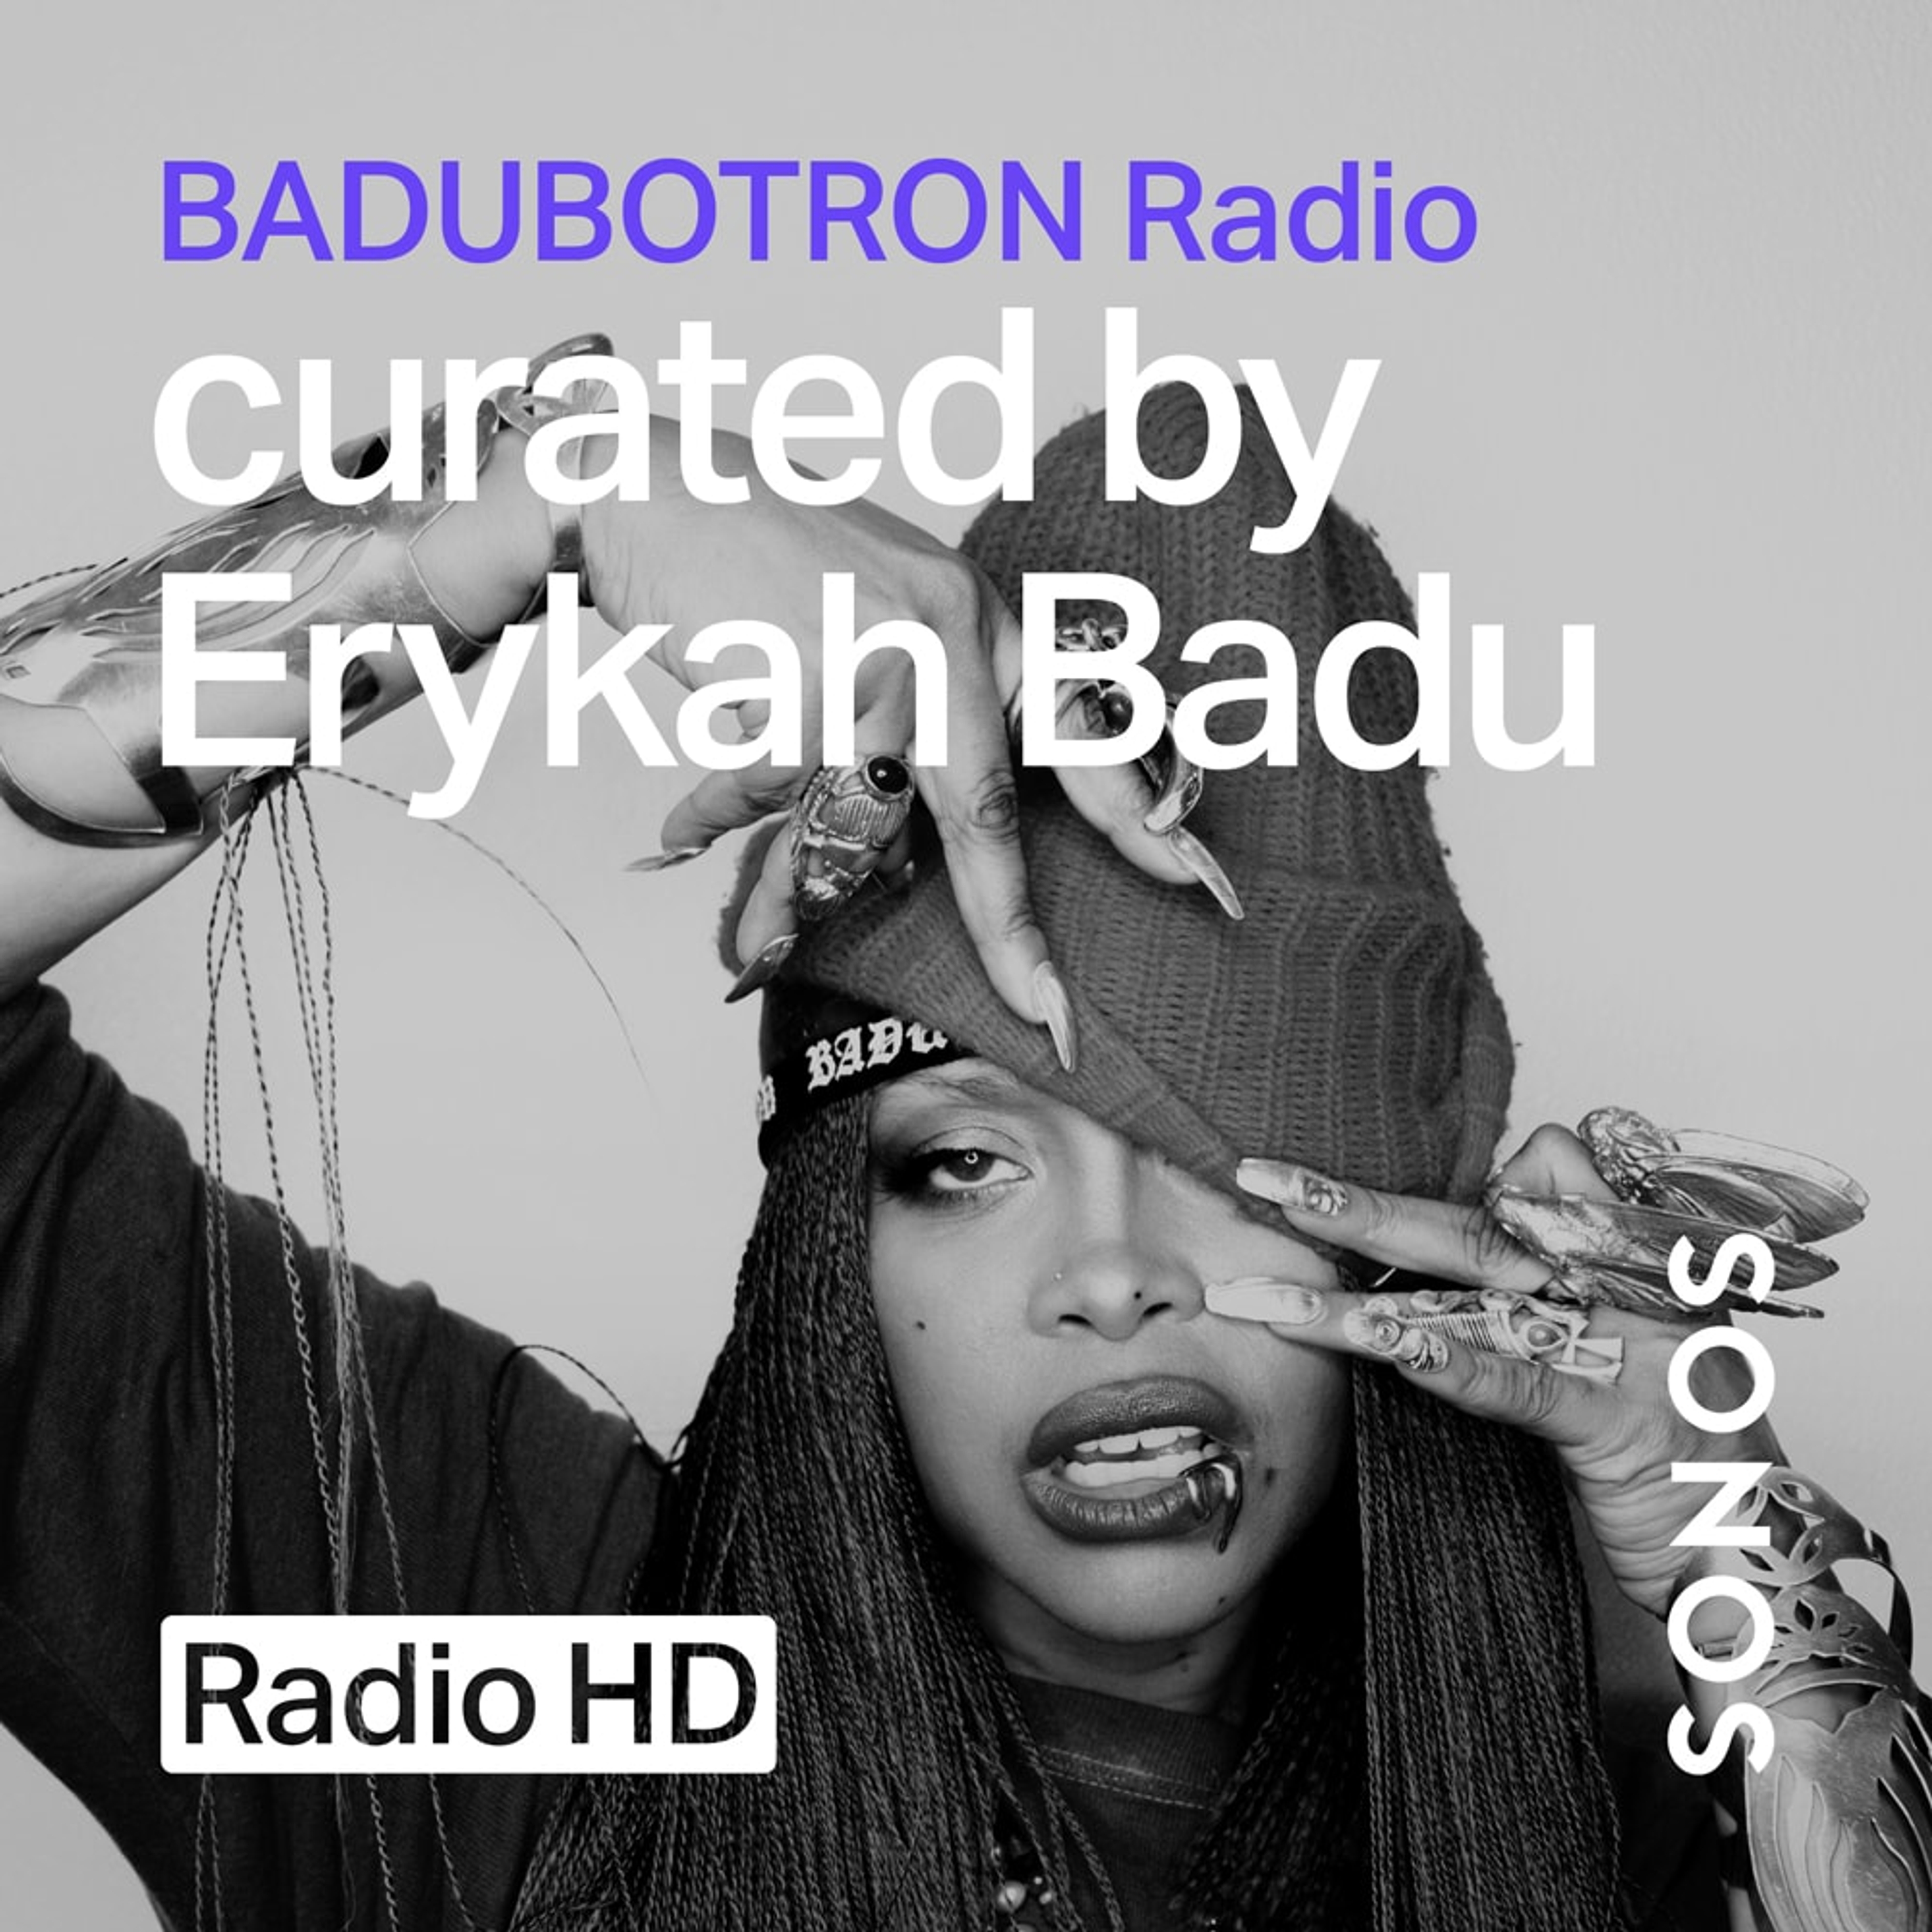 Badubotron radio station cover